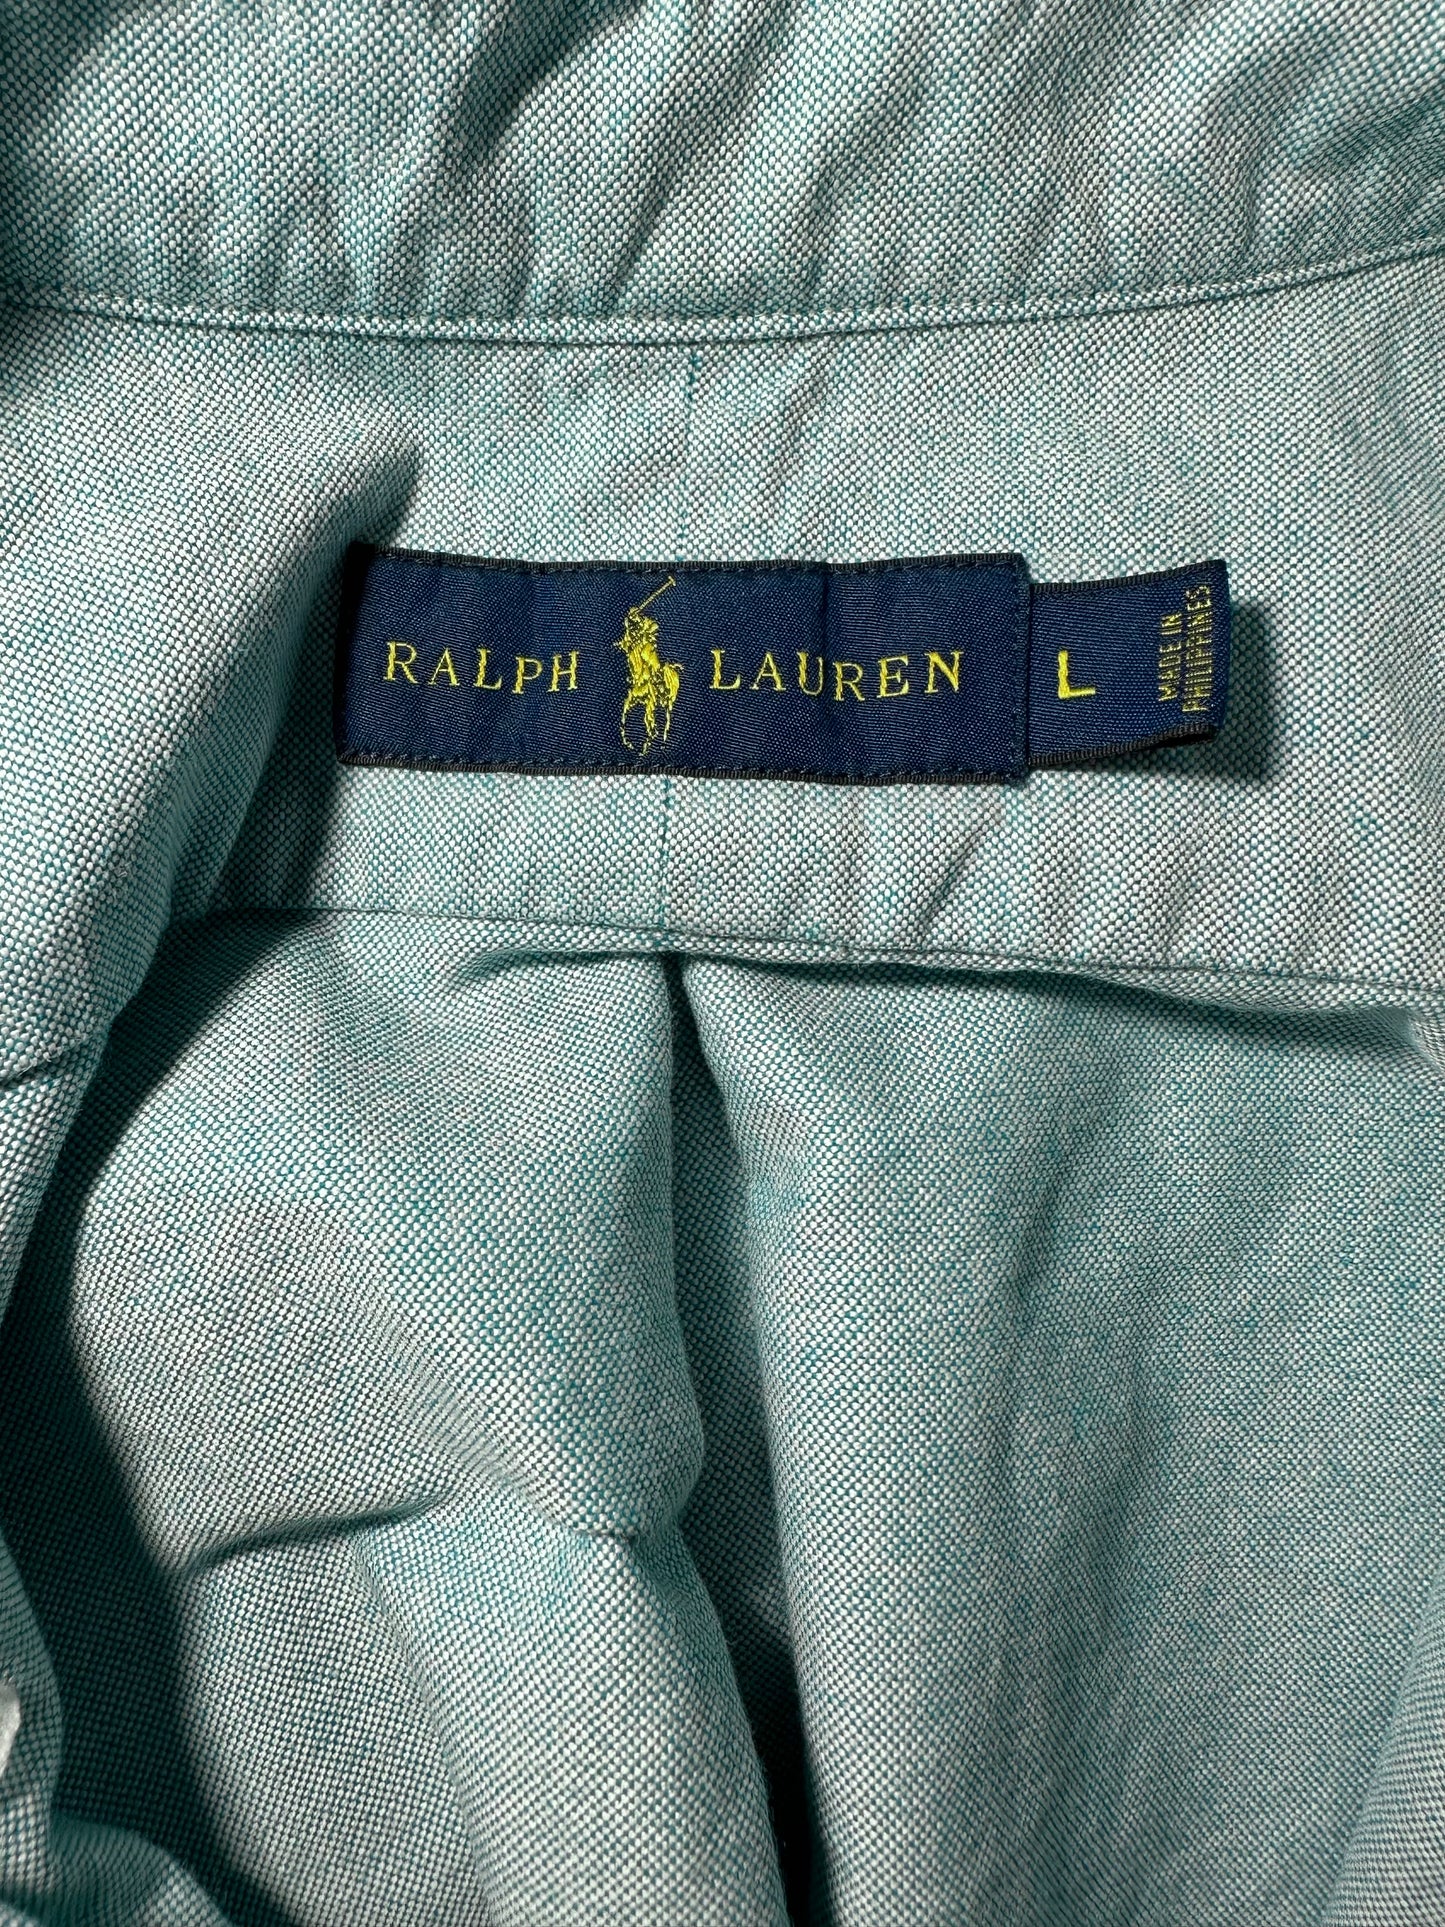 Polo Ralph Lauren button down shirt